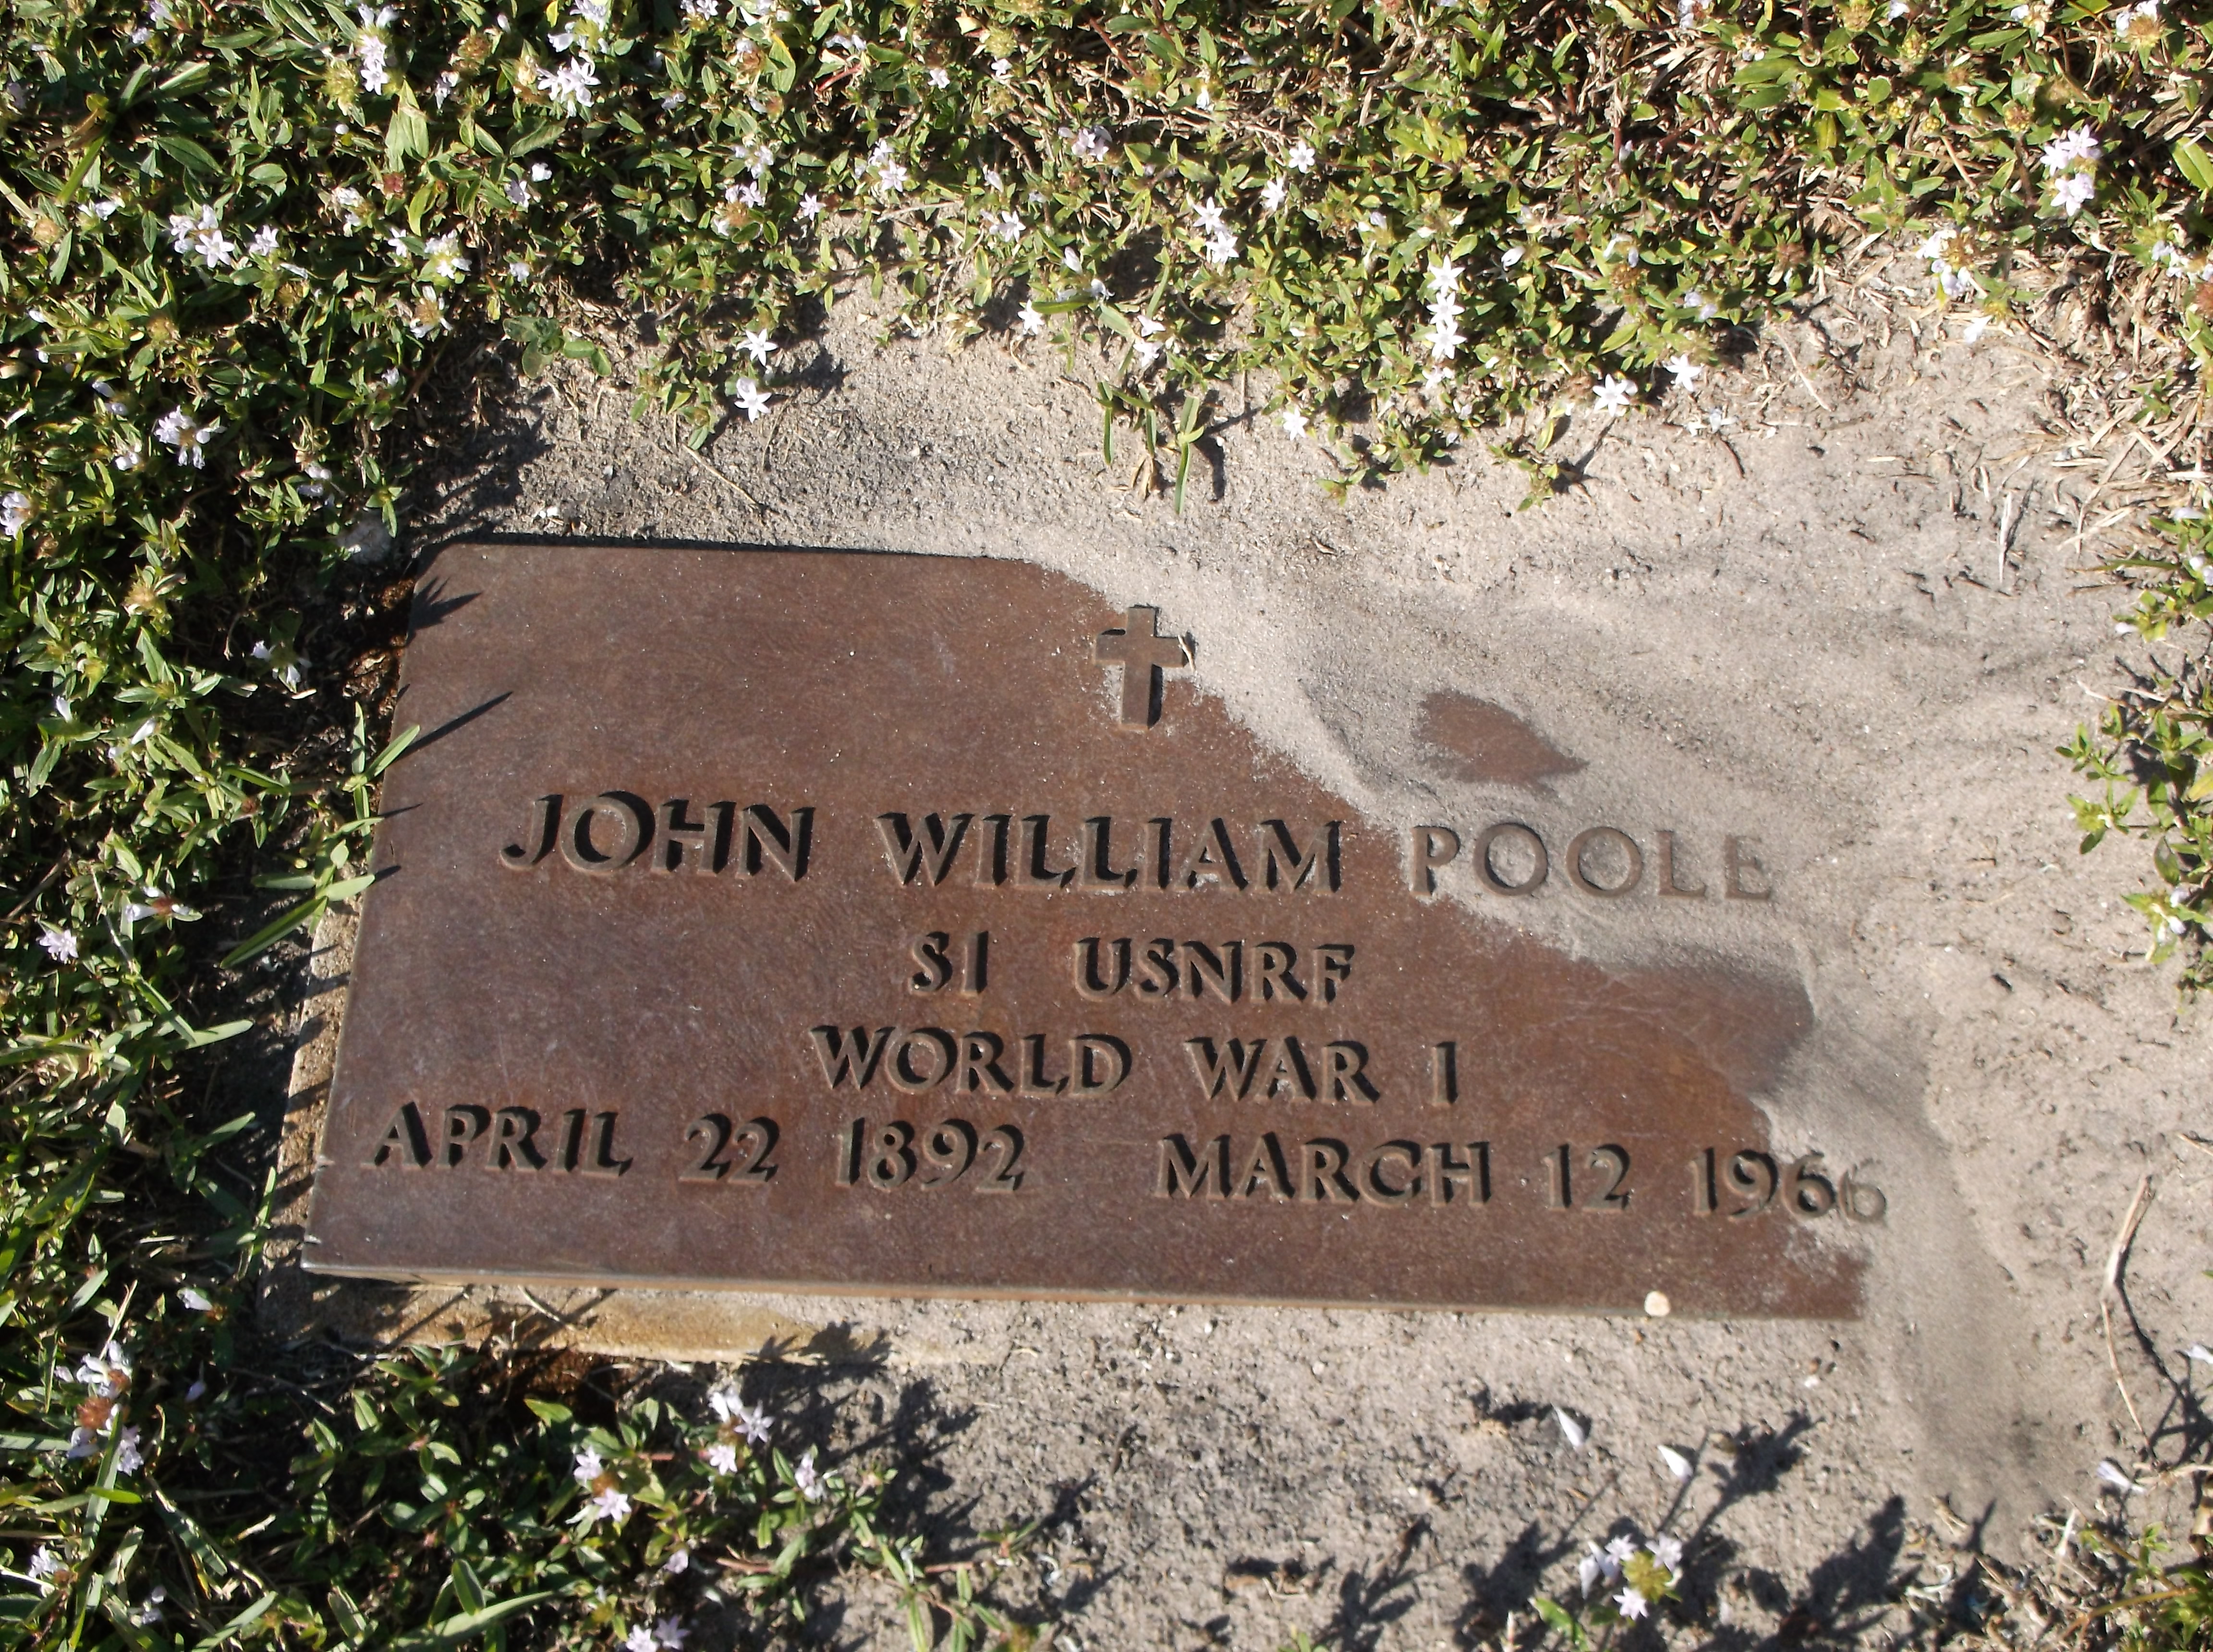 John William Poole